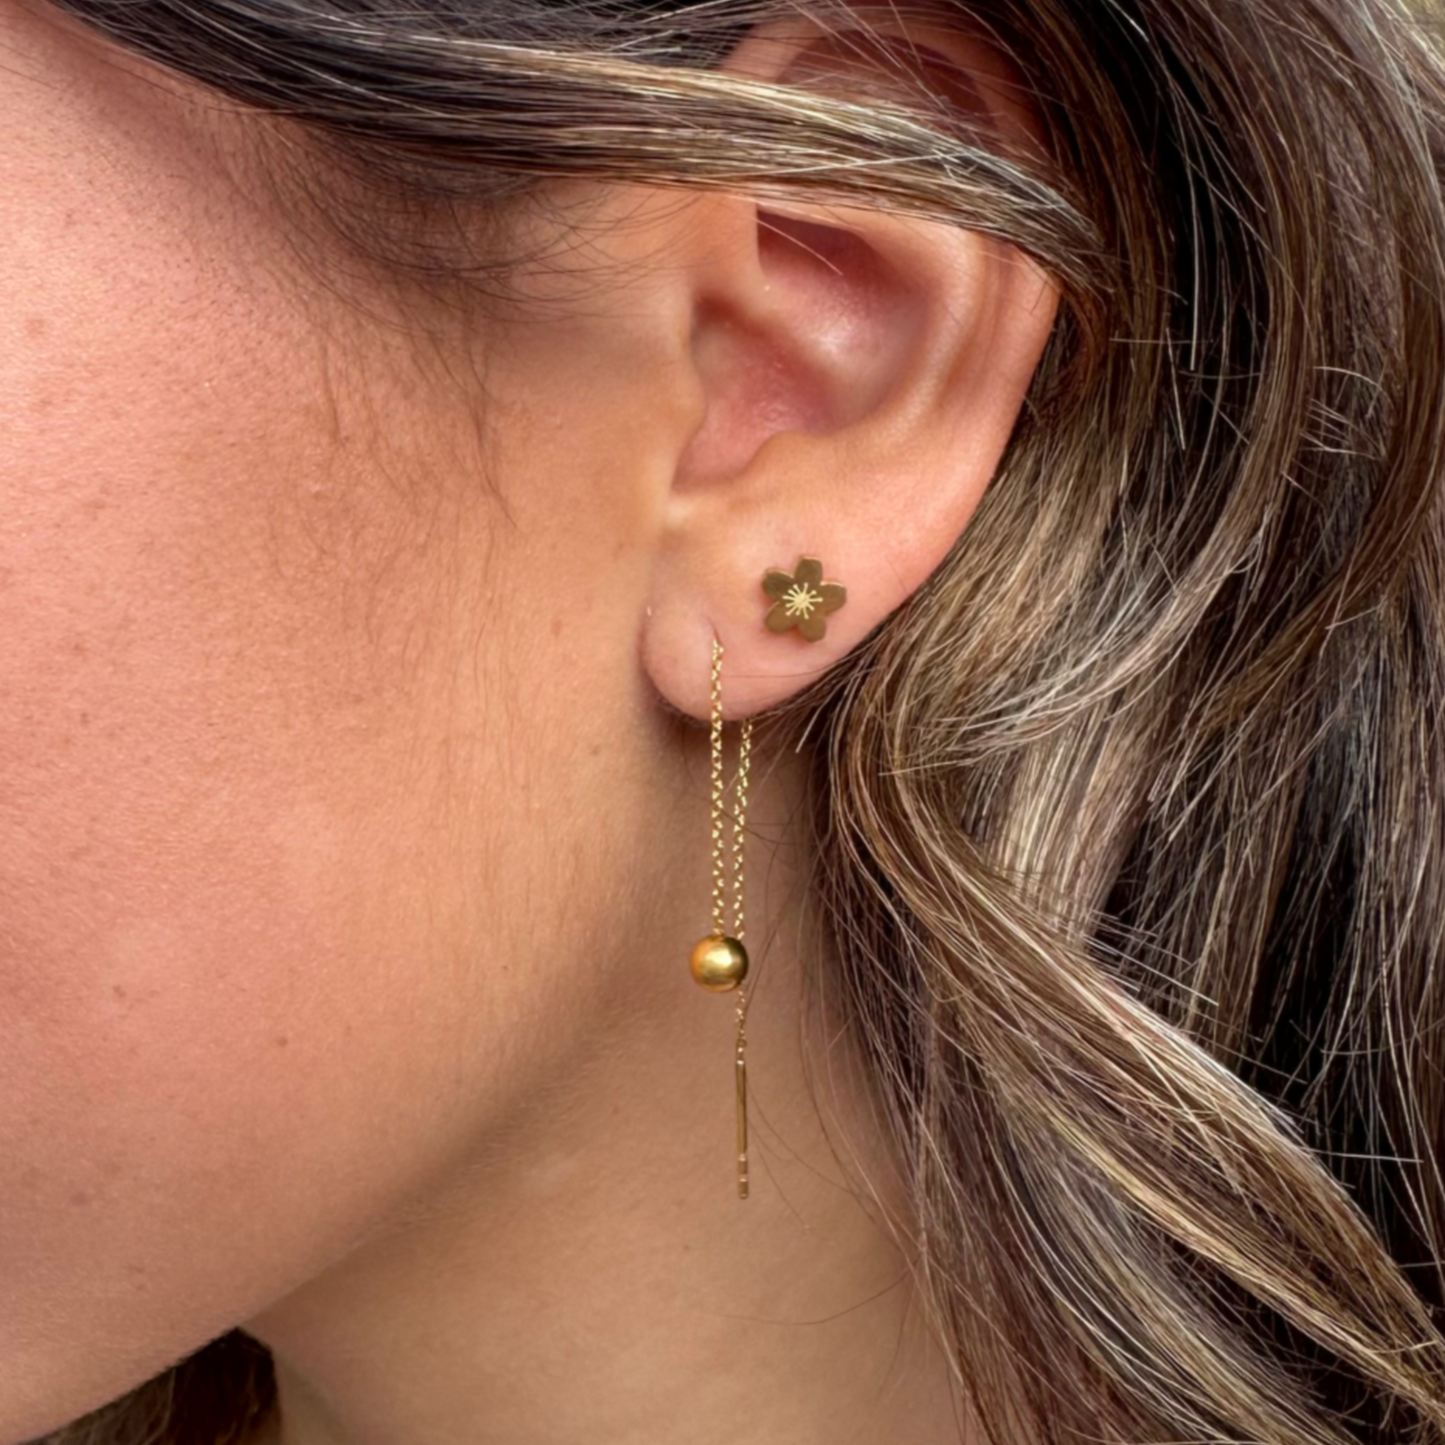 Minimalist ball end ear thread earrings in Gold